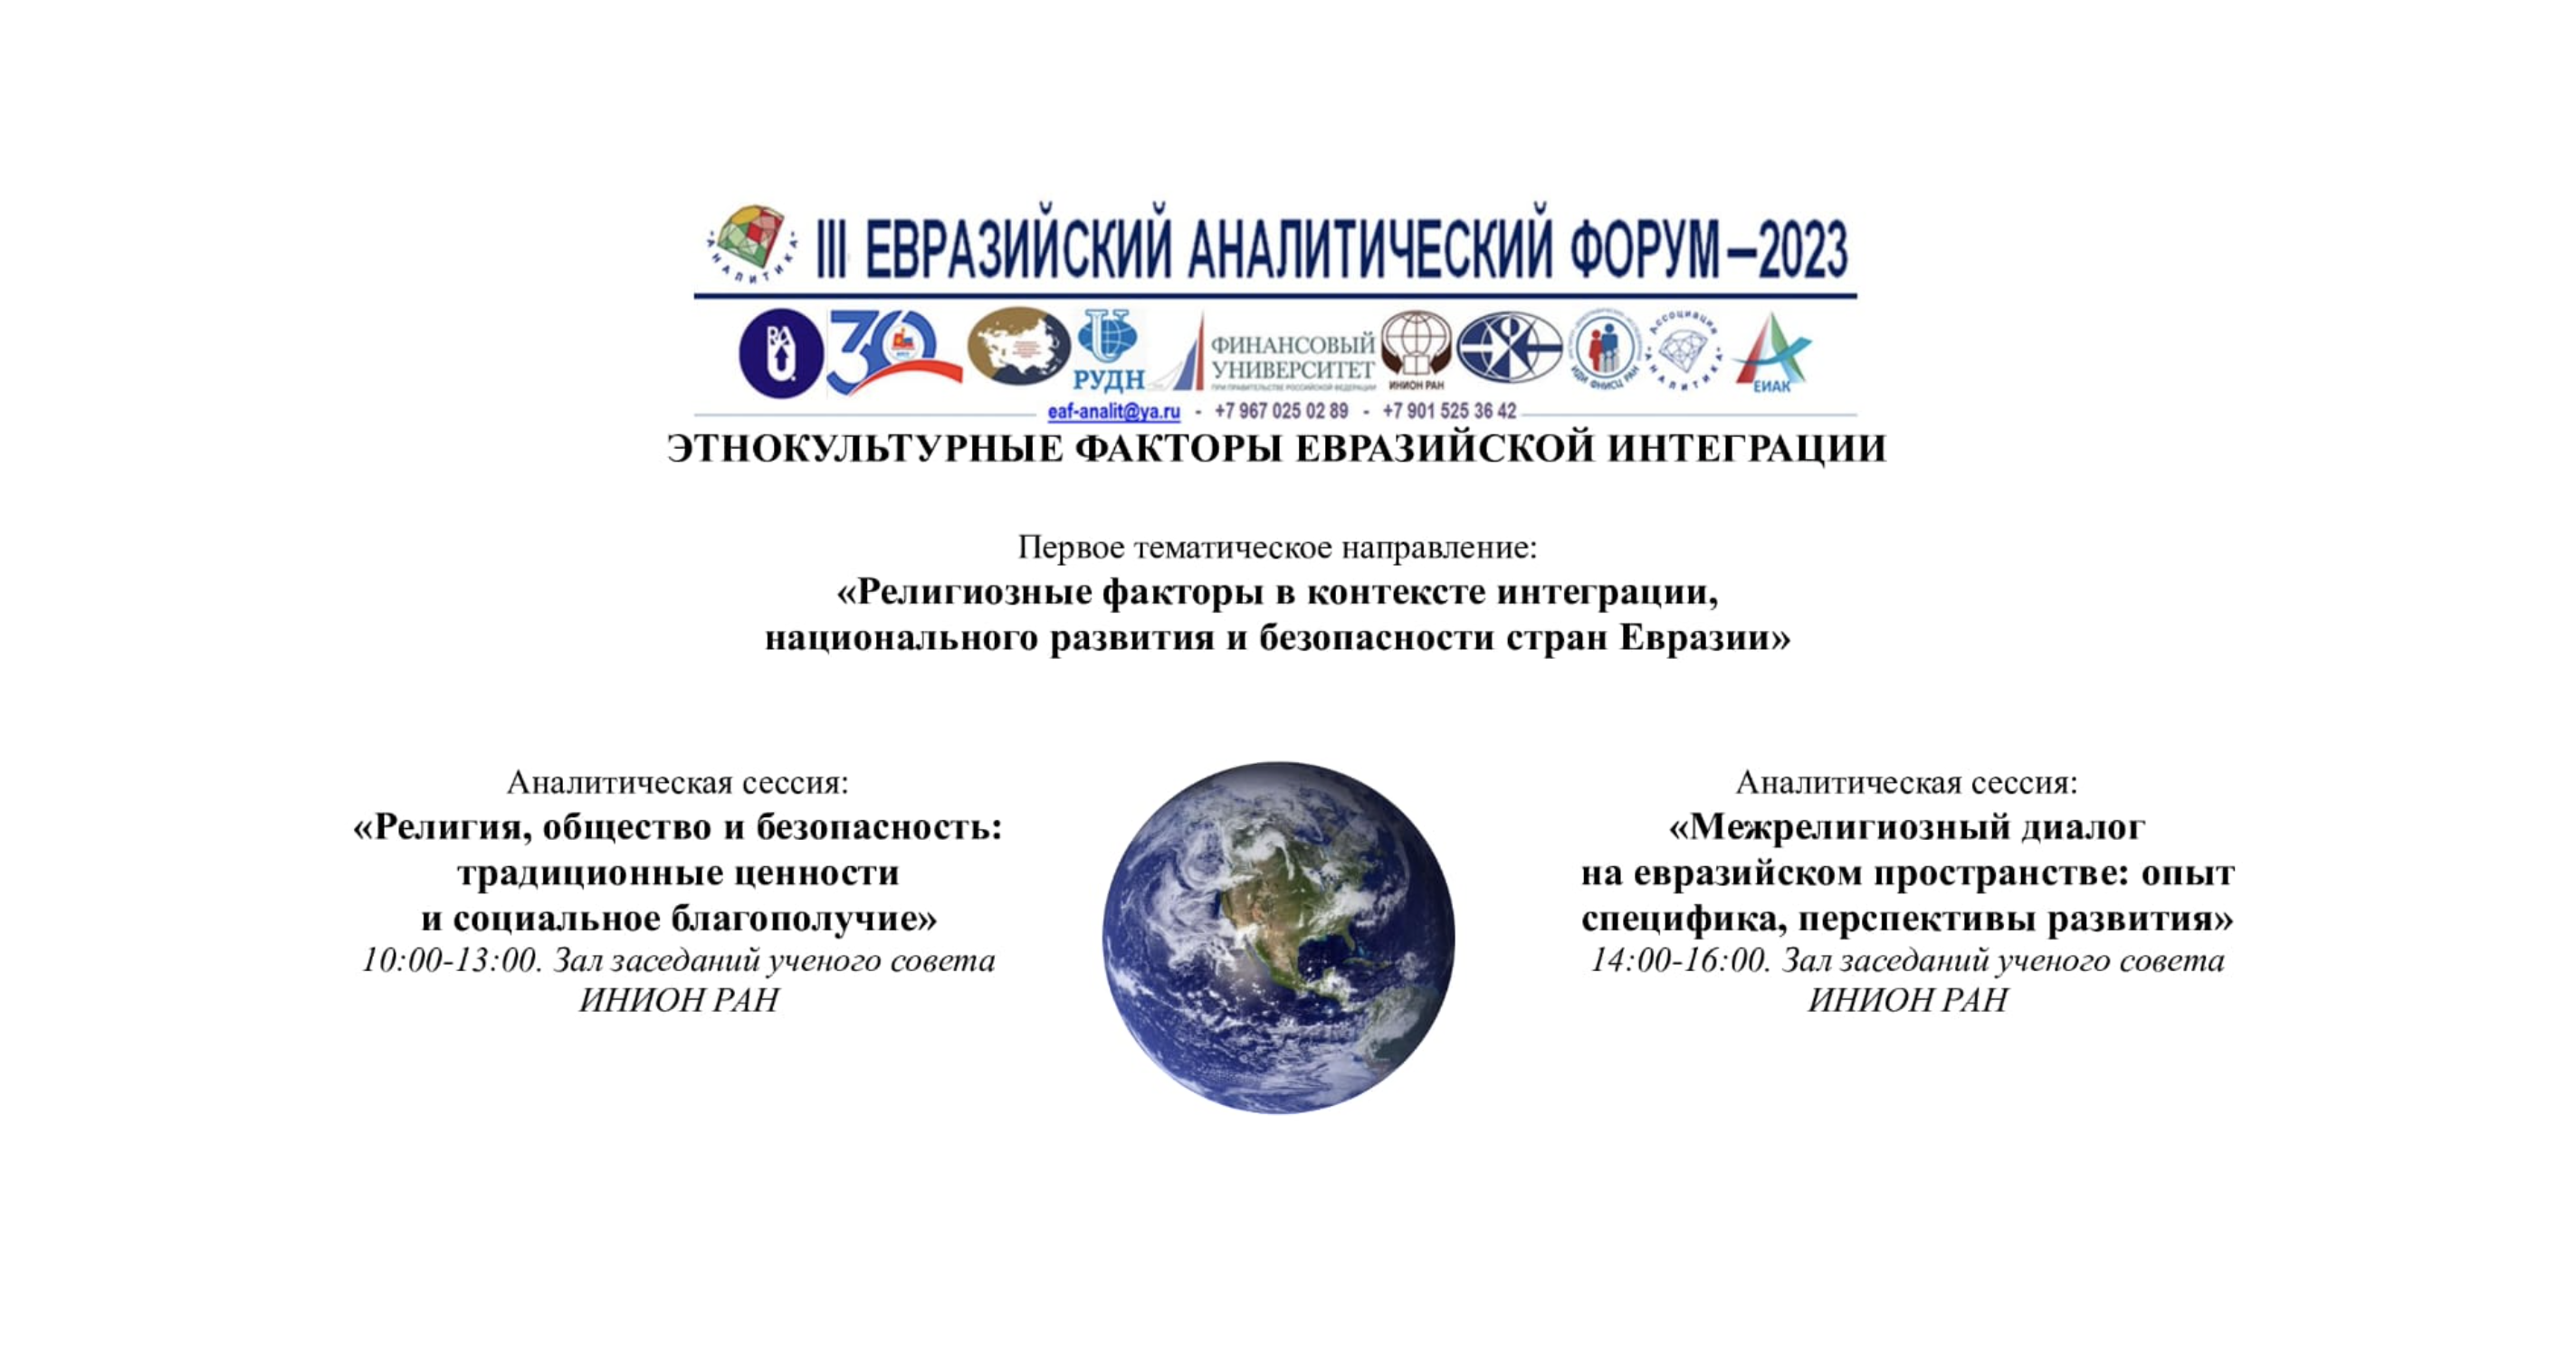 Представители ДСМР выступили на сессии в рамках Евразийского аналитического форума 